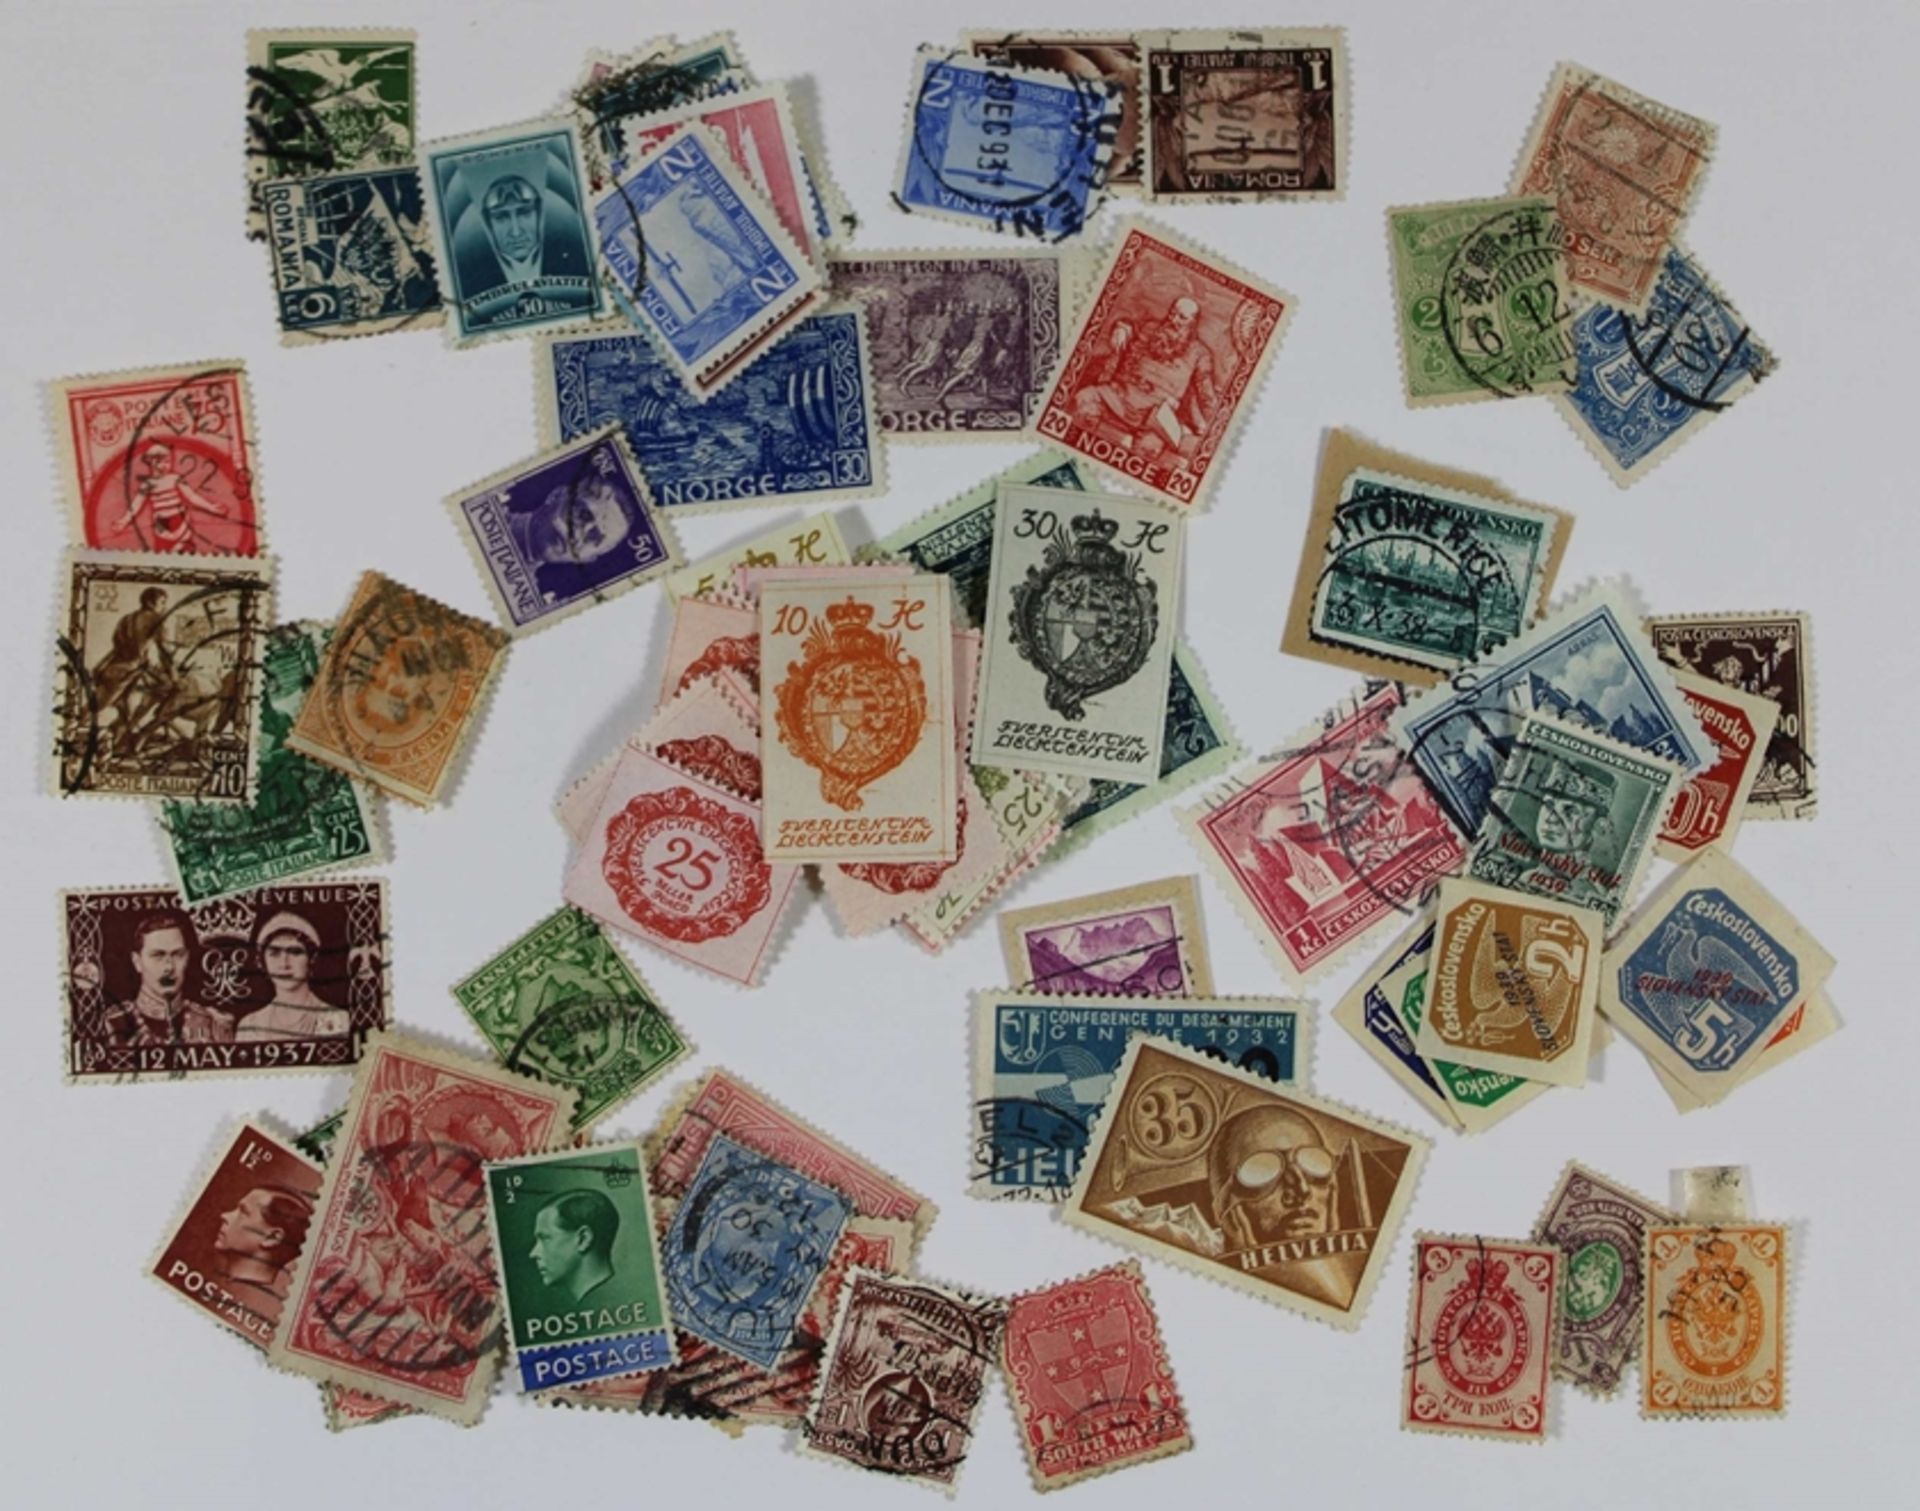 Großes Konvolut Briefmarken aus aller Welt: Tschechoslowakei, Griechenland, England, Spanien, Kanad